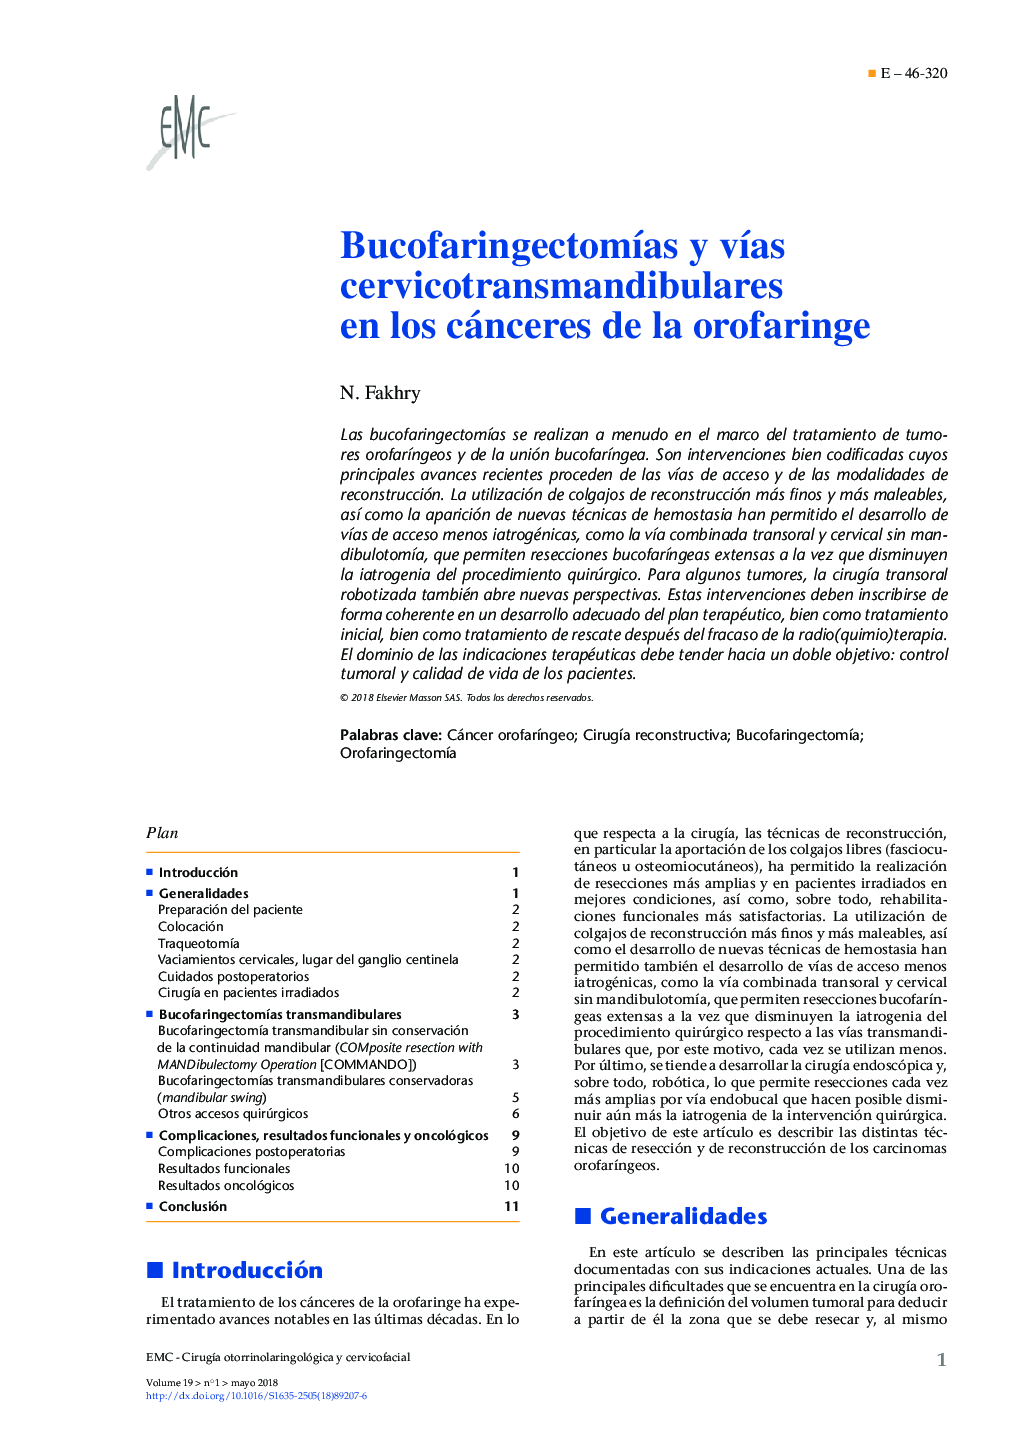 BucofaringectomÃ­as y vÃ­as cervicotransmandibulares en los cánceres de la orofaringe